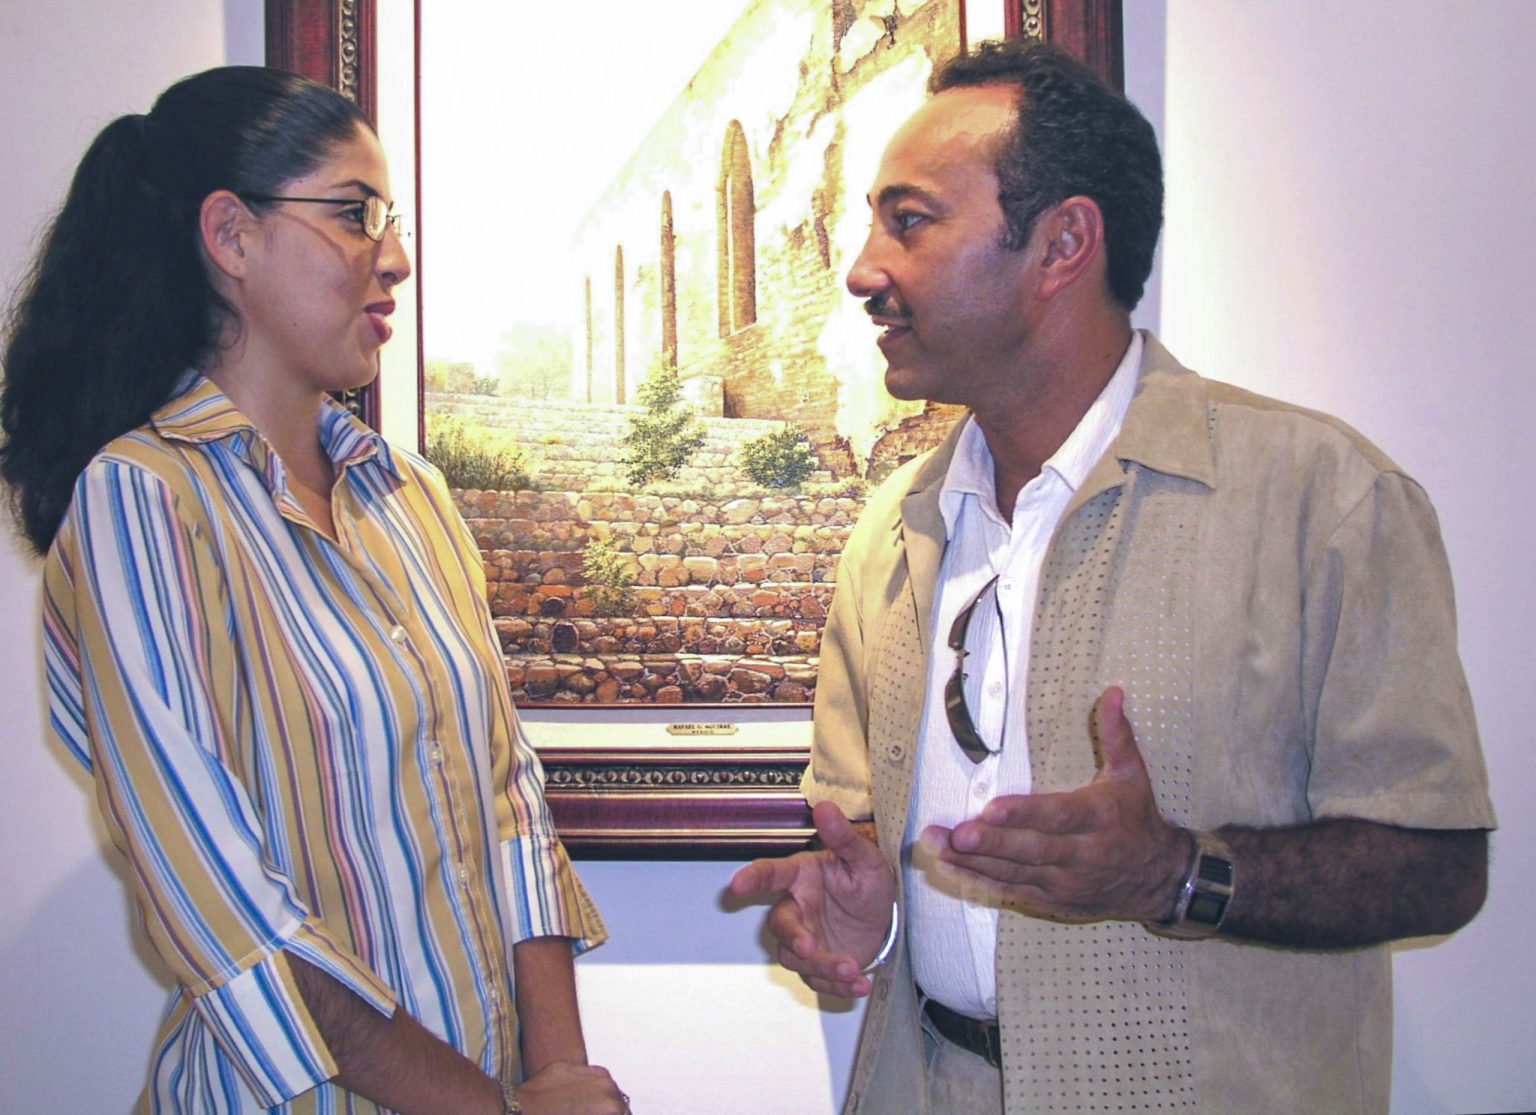 Antoine Gaber “PASSION FOR LIFE” solo Exhibition at El Museo de la Isla de Cozumel, Isla de Cozumel, Quintana Roo, México. TV Interview with Journalist from Sabor Caribeno.